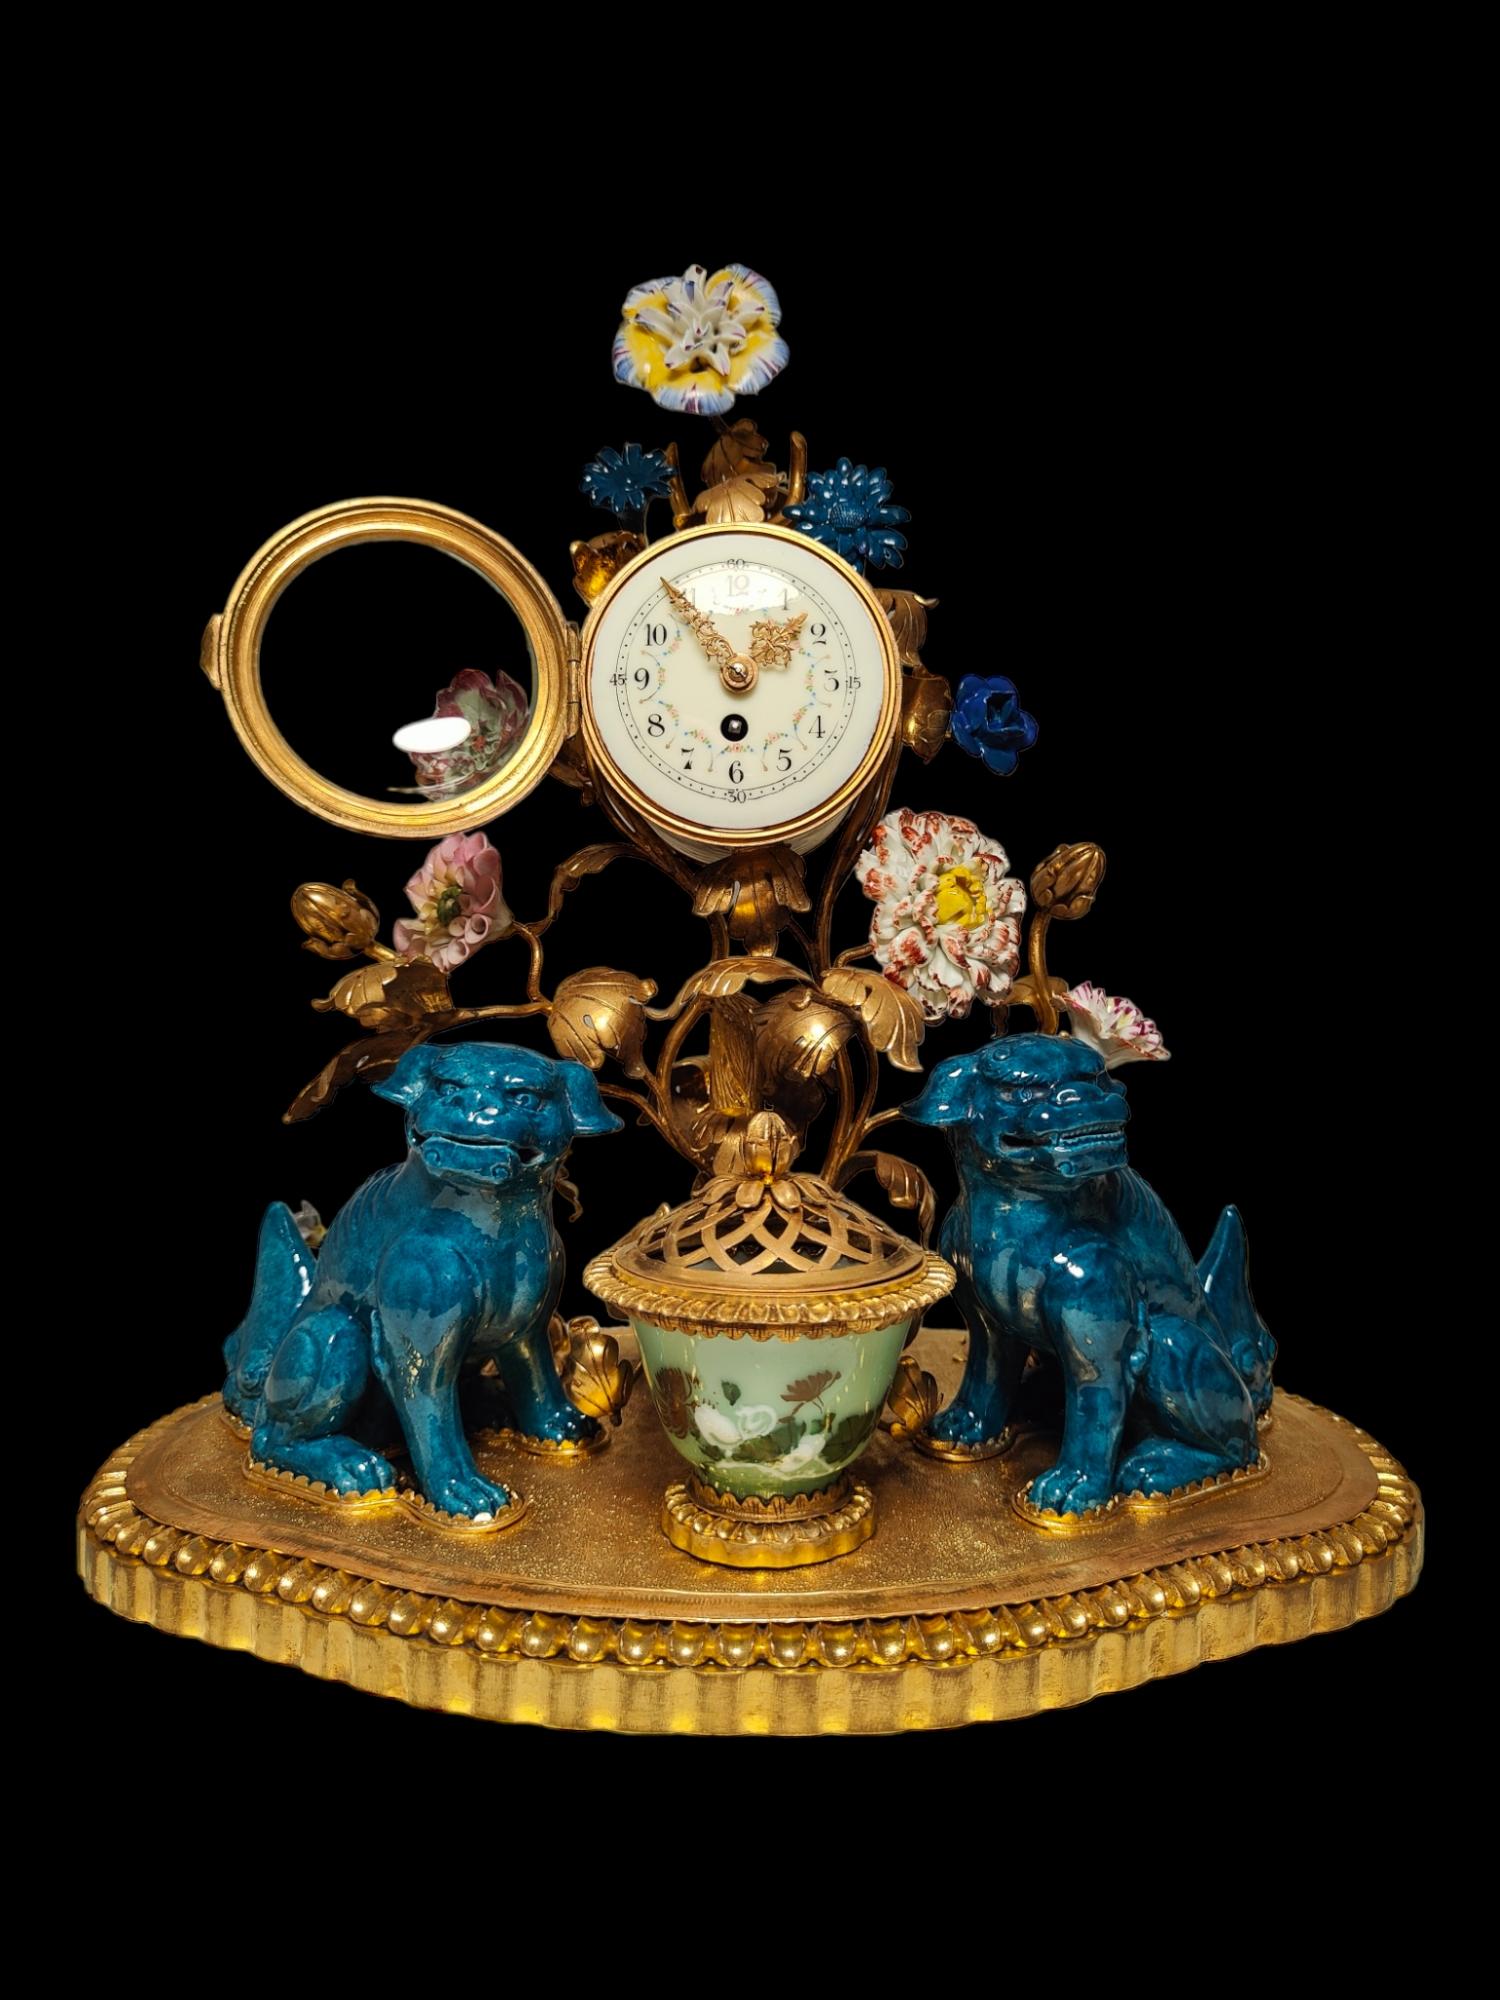 Uhr aus vergoldeter Bronze und Porzellan im Chinosoiserie-Stil.
Die falsch benannten 